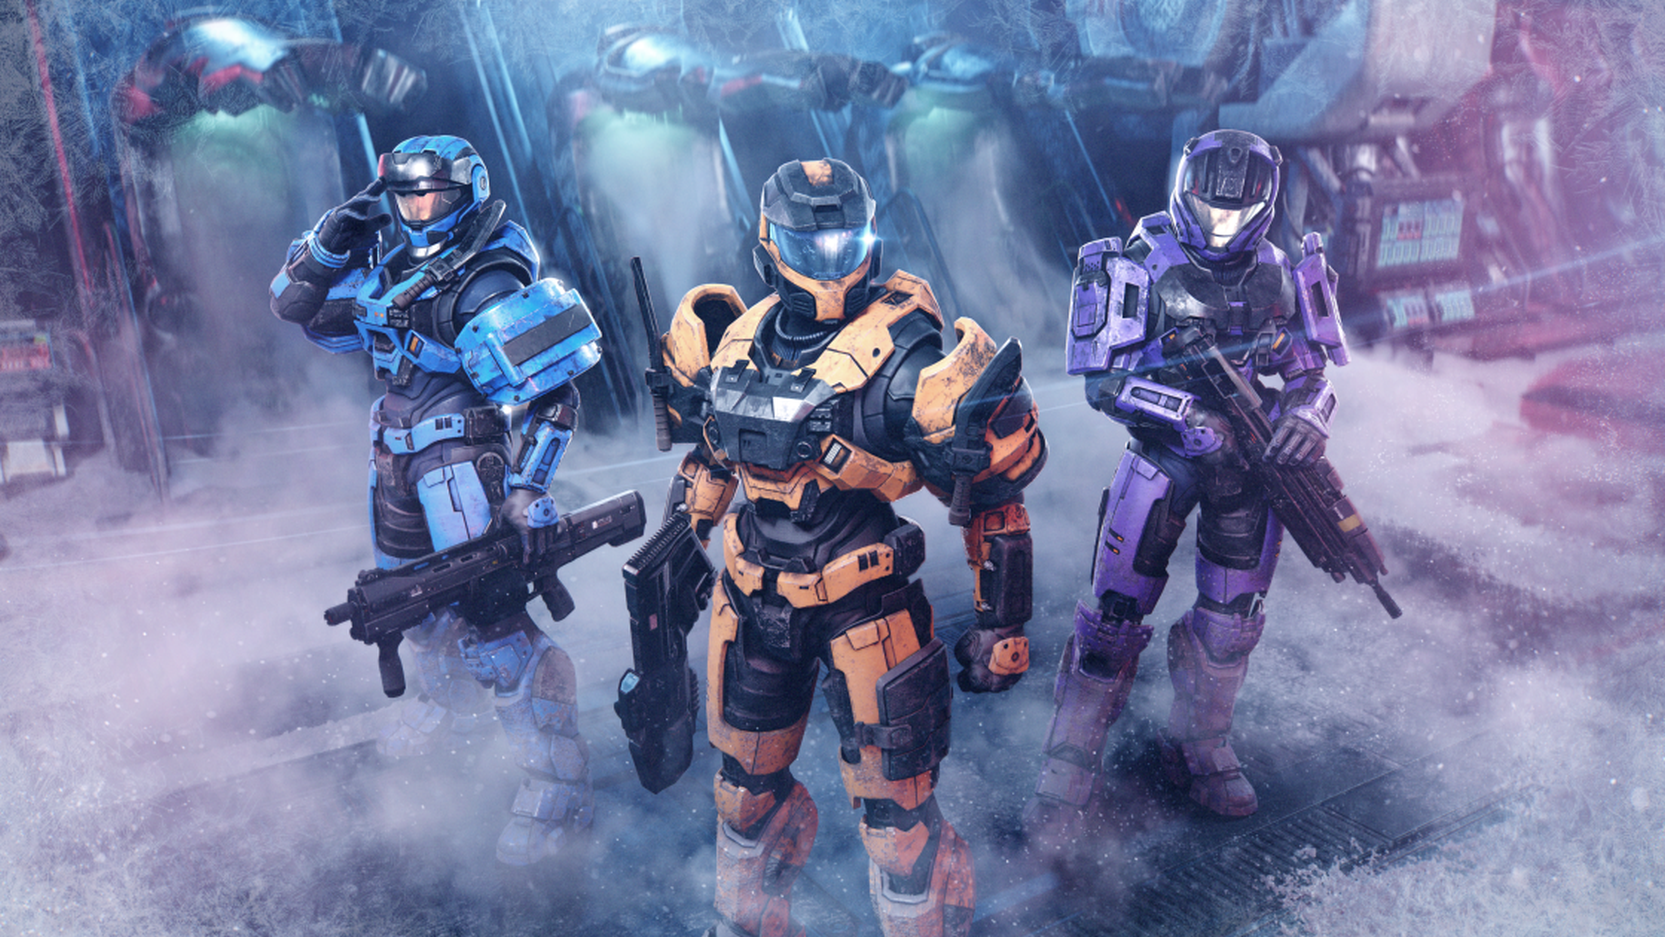 Pembaruan musim dingin Halo Infinite langsung dengan kampanye co-op, Forge beta, dan banyak lagi